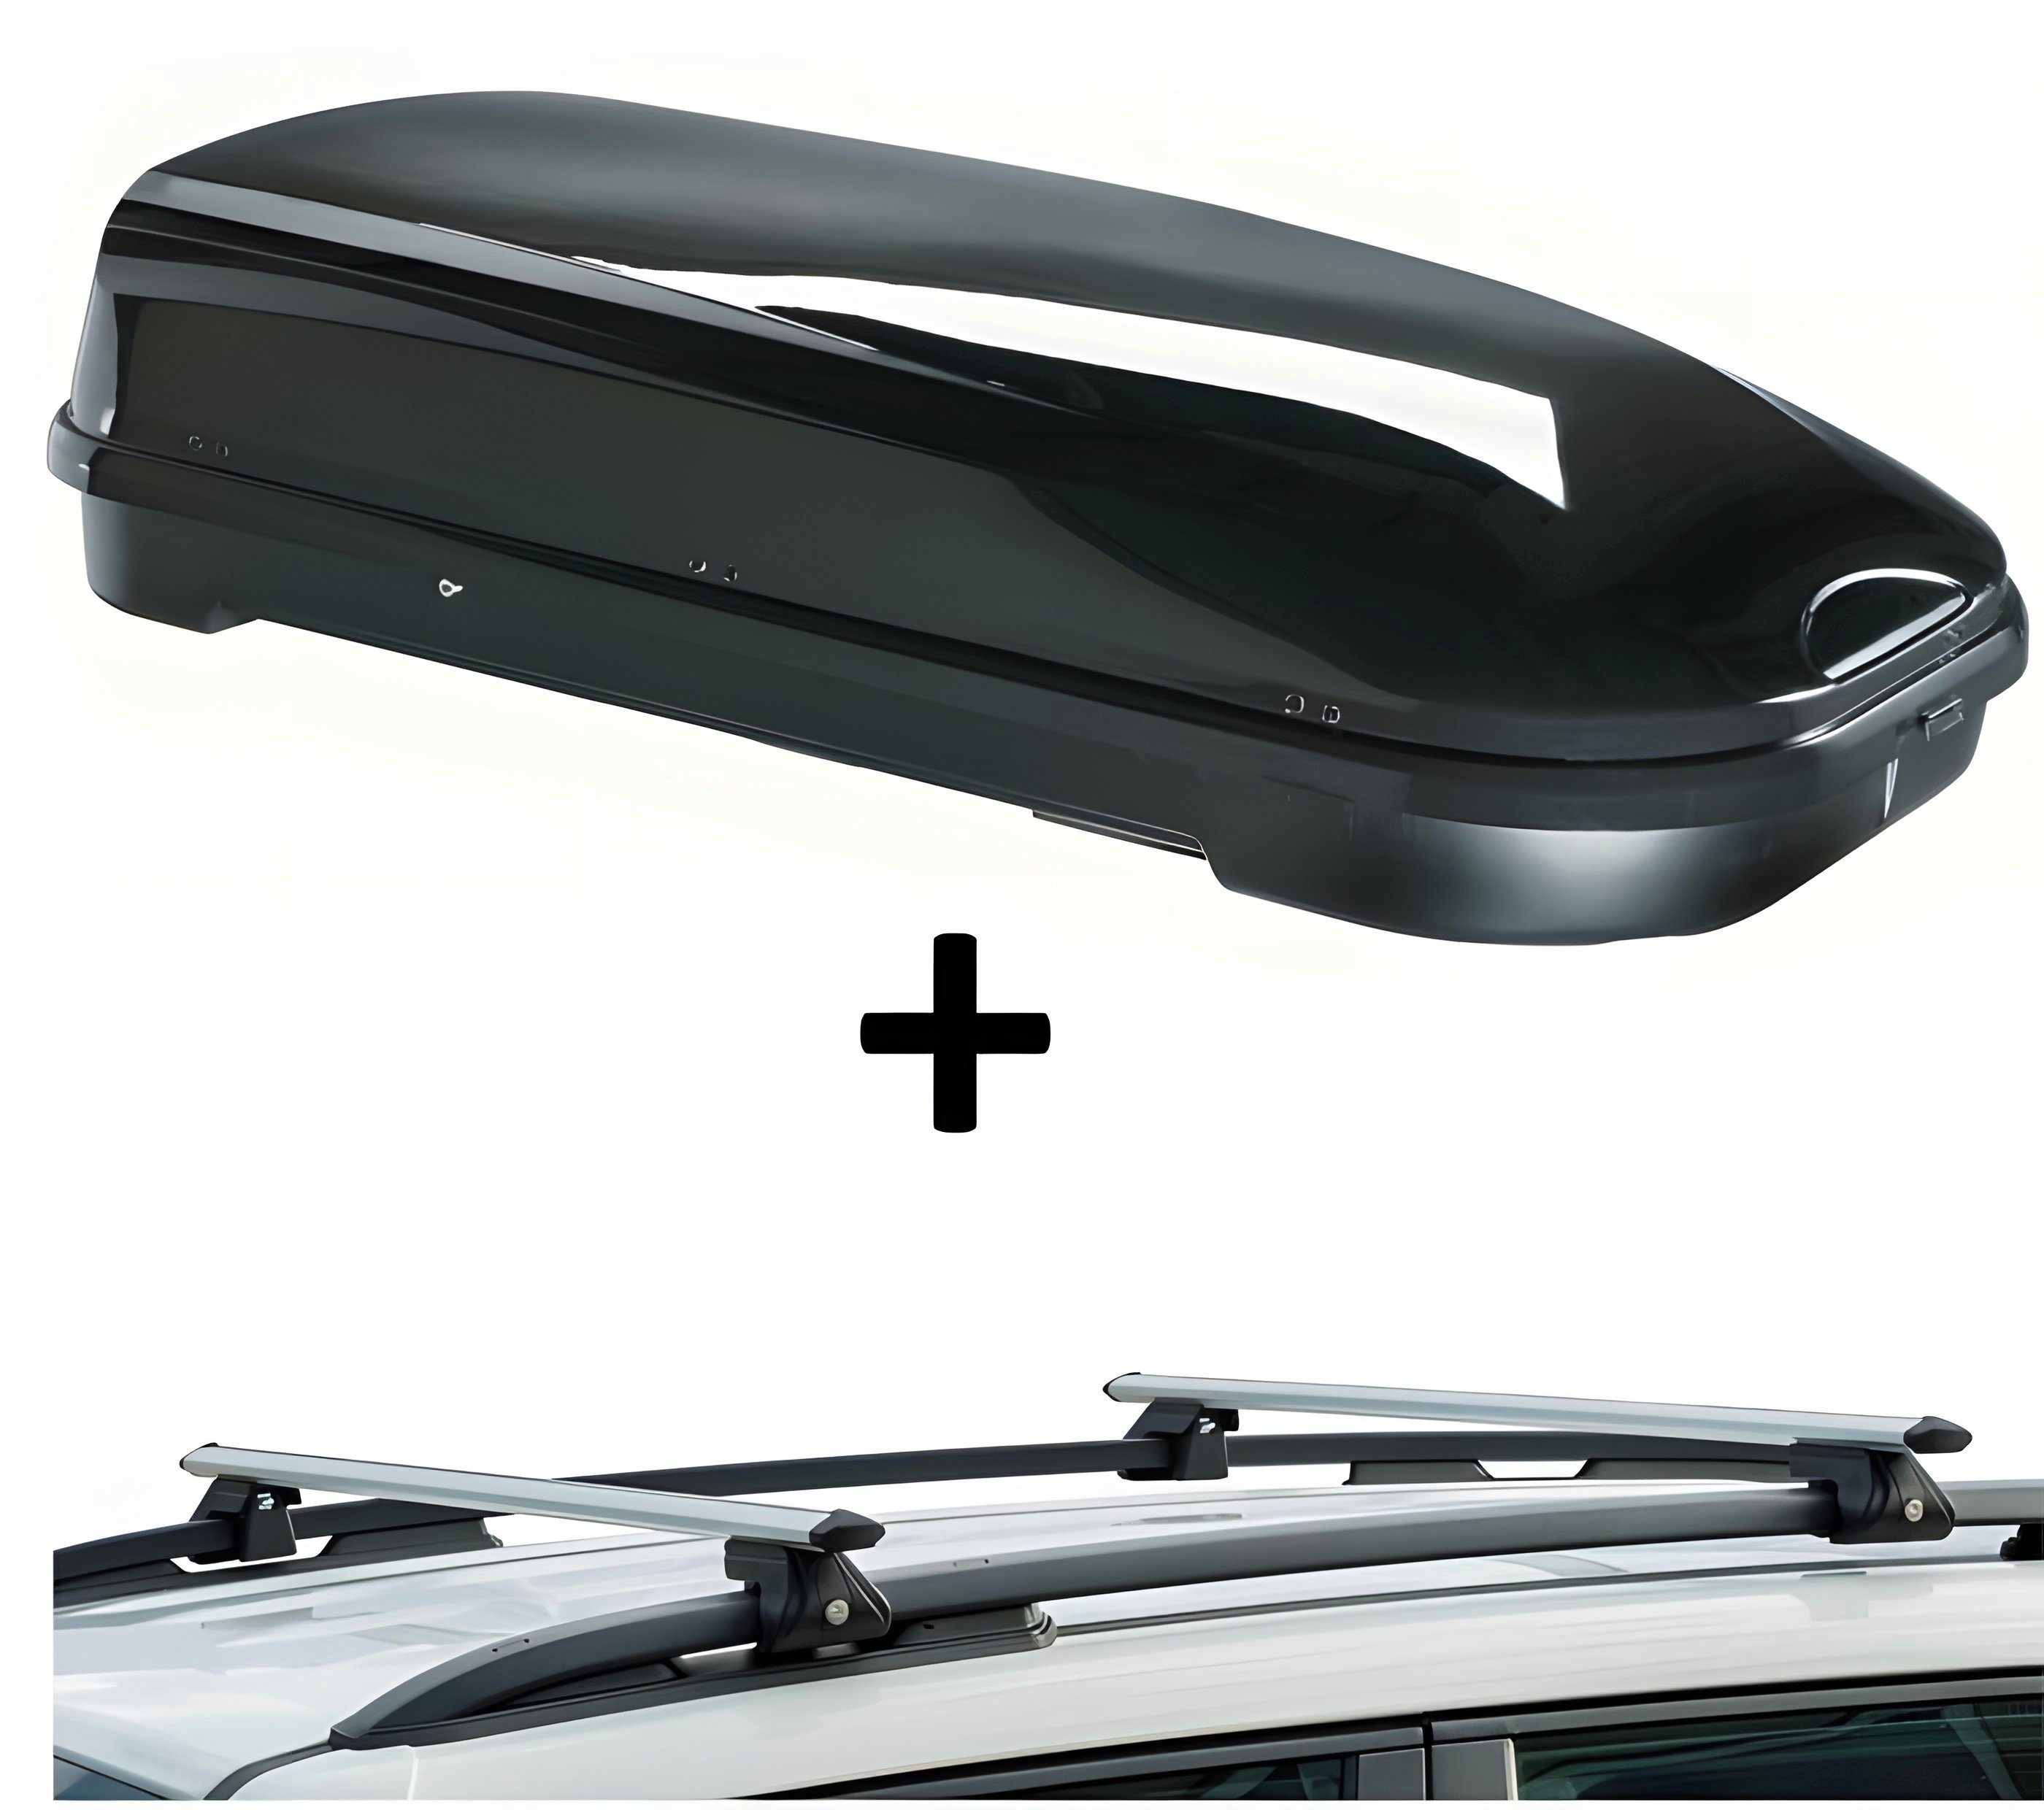 VDP Dachbox, Dachbox VDPFL580 580Ltr schwarz glänzend + Dachträger CRV120 kompatibel mit Mercedes Classe C SW III (5 Türer) 2007-2014 | Dachboxen